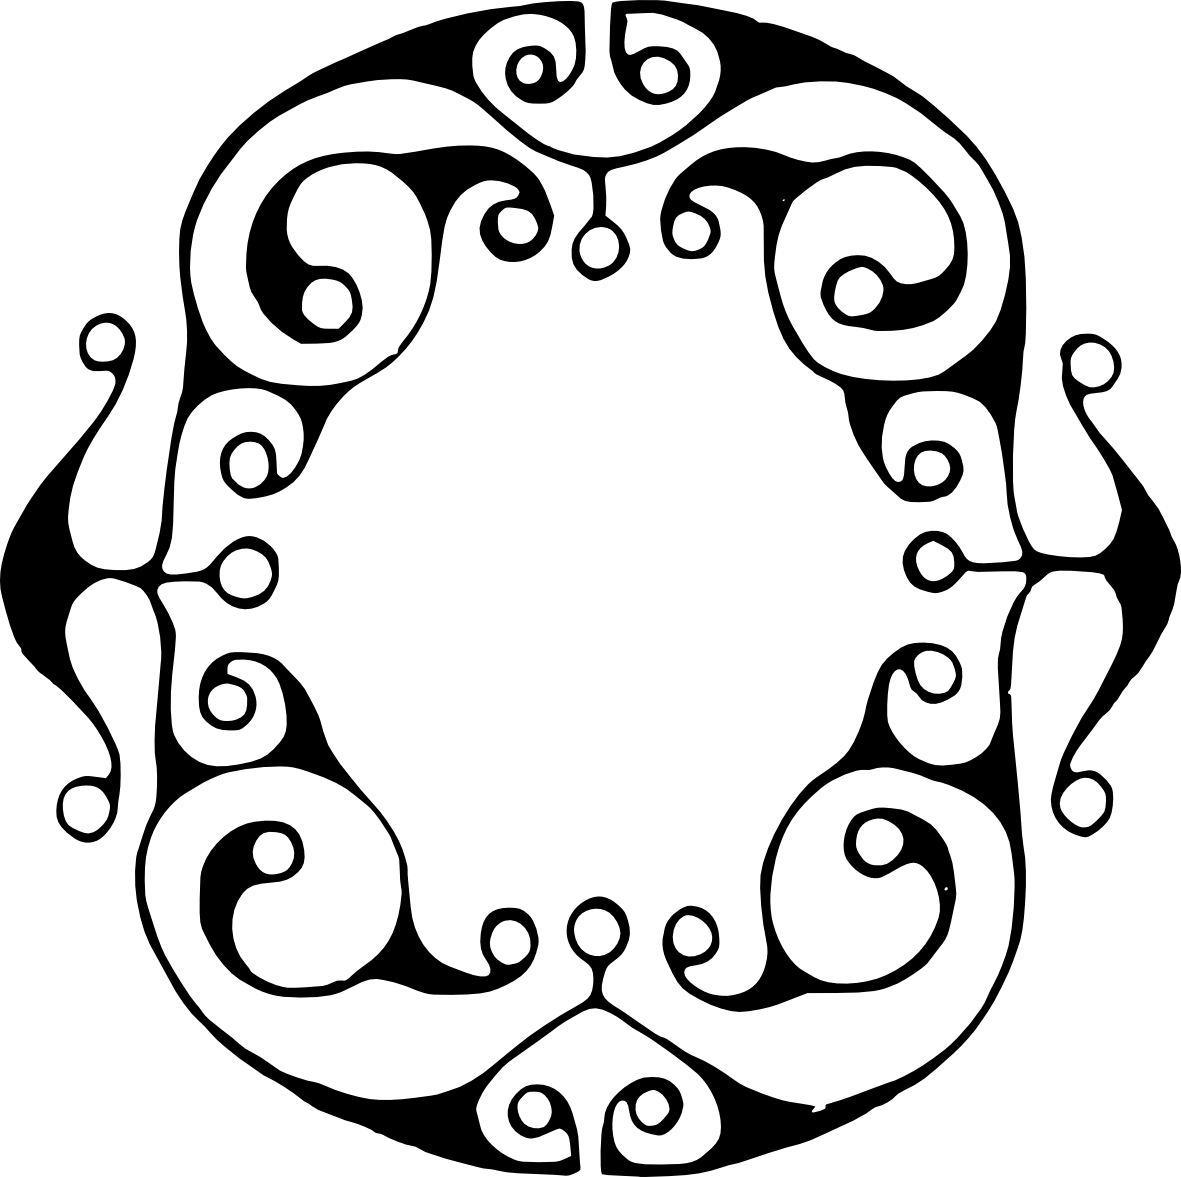 Emania logo